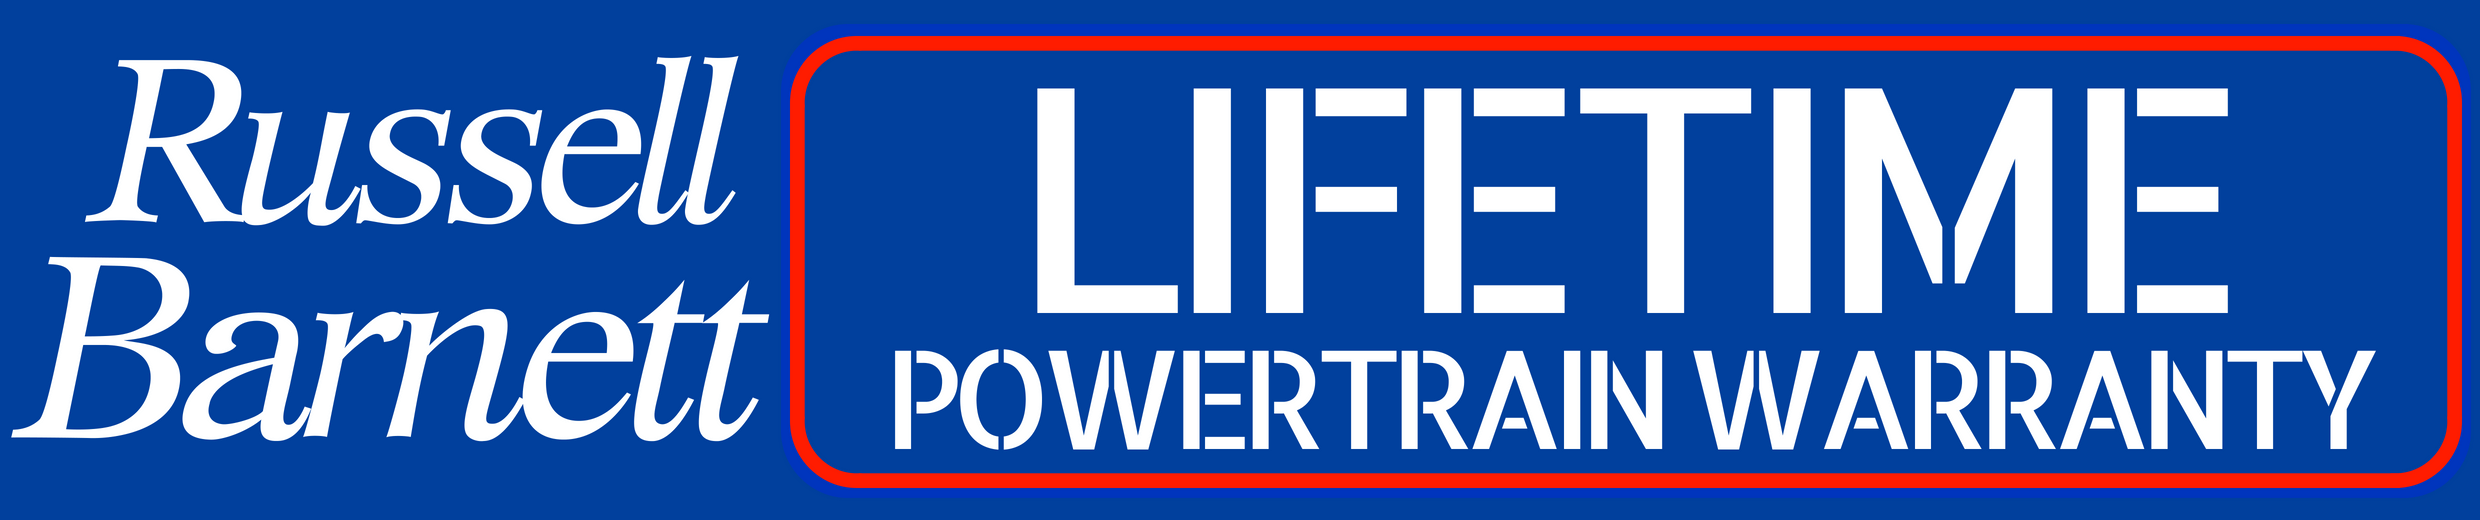 Russell Barnett Lifetime Powertrain Warranty